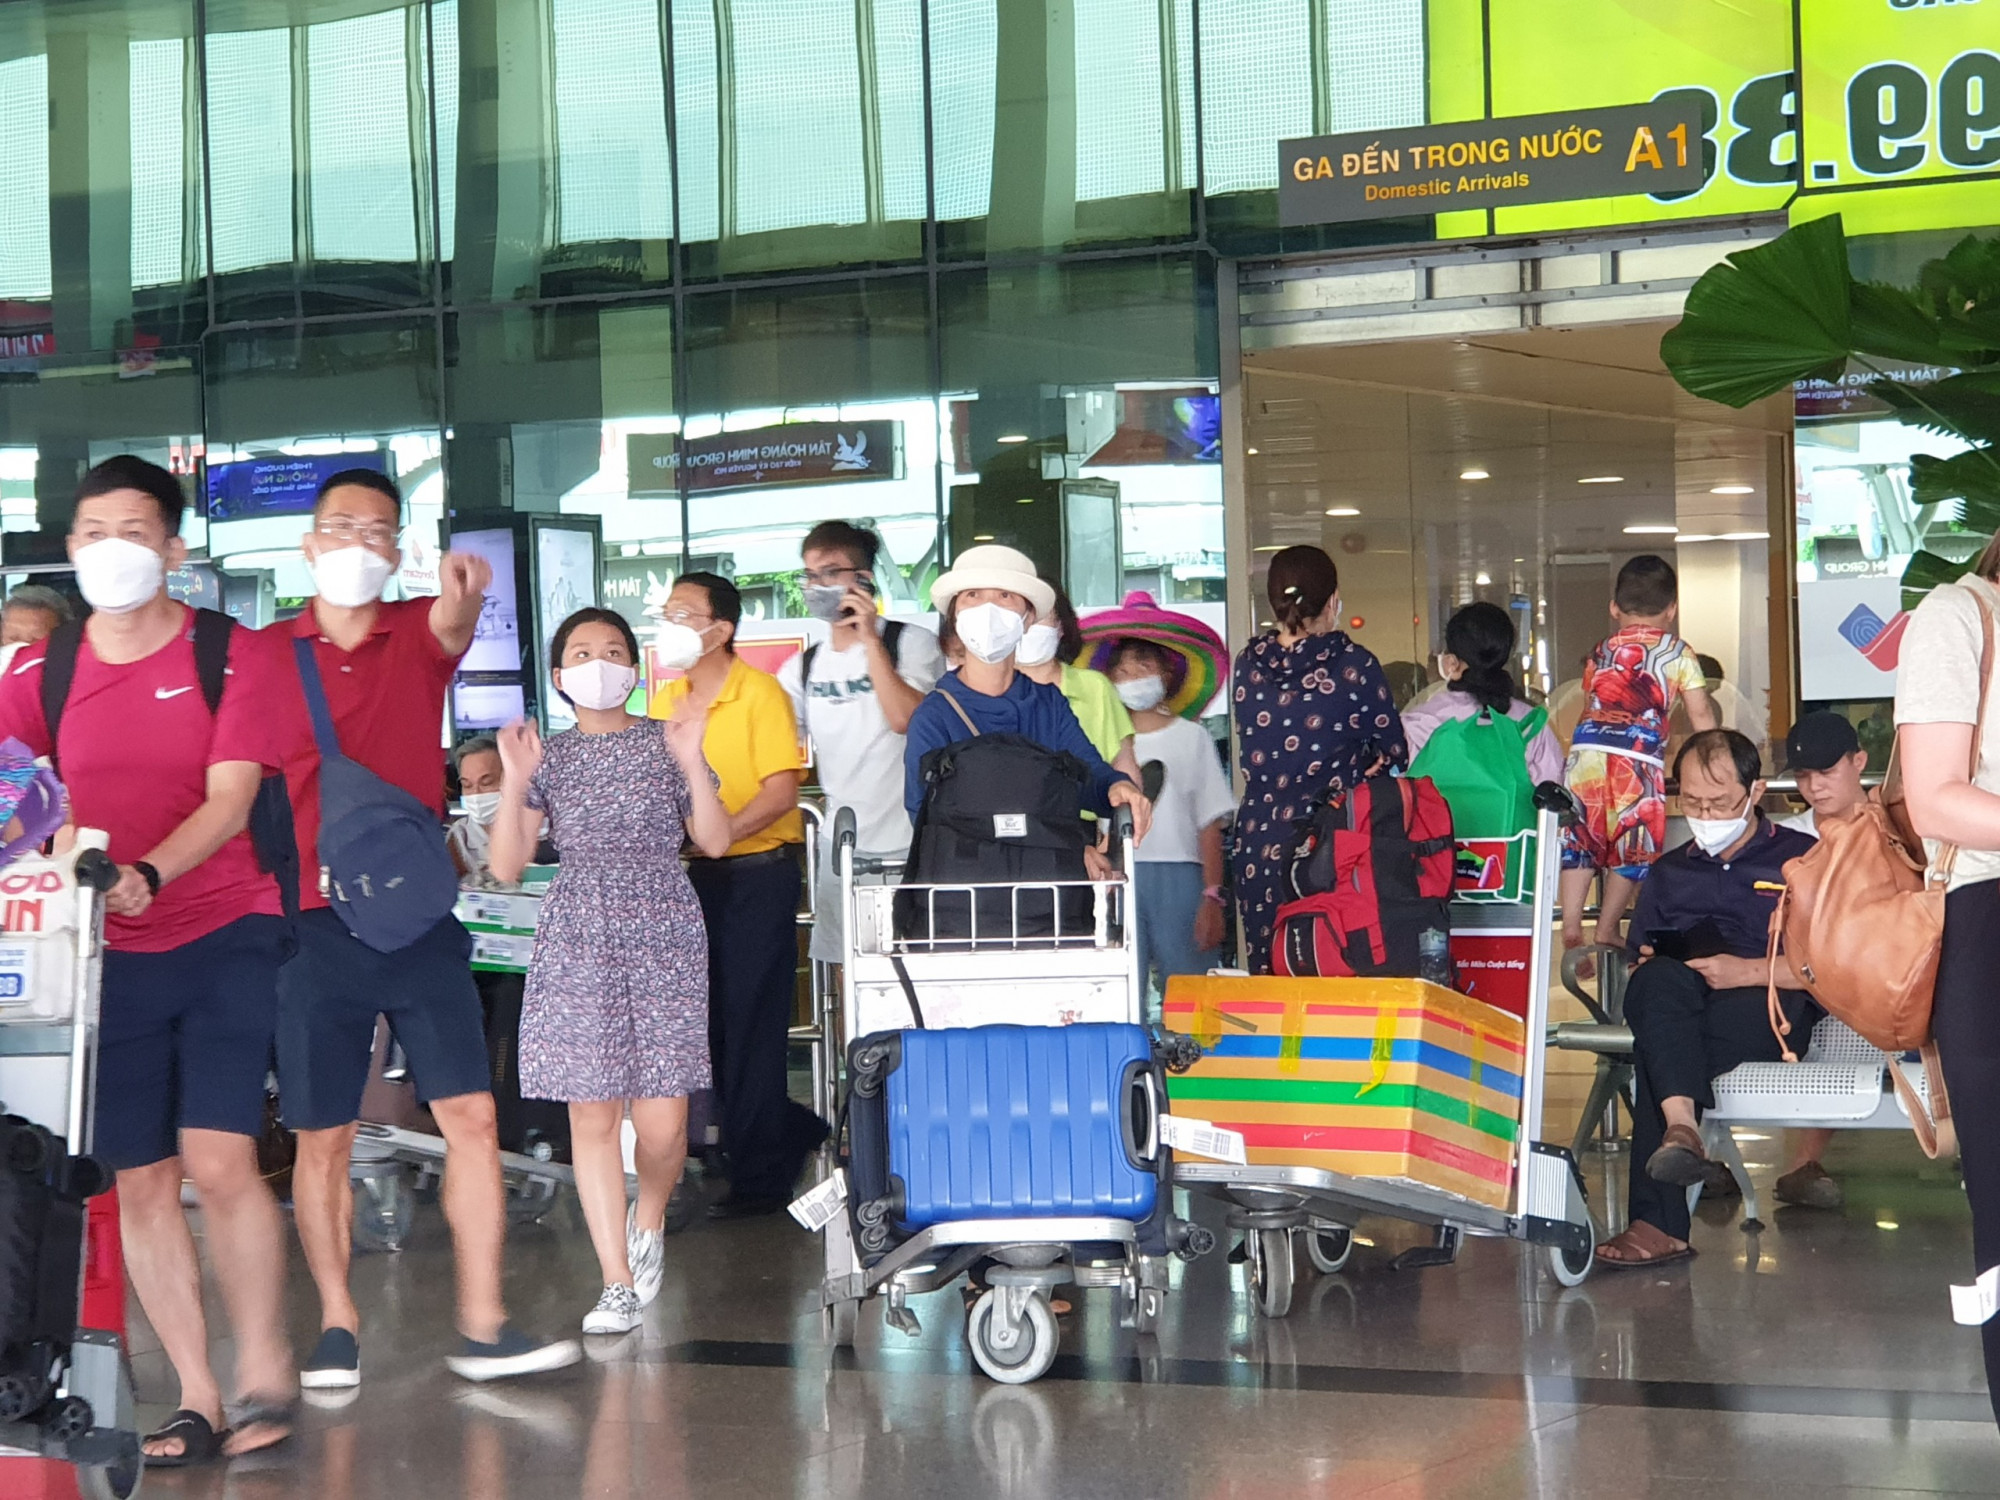 Chiều nay, ngành chức năng sân bay Tân Sơn Nhất đã phải mở thêm cổng A1 hoạt động để cùng cổng A2 làm nhiệm vụ giải tỏa khách.